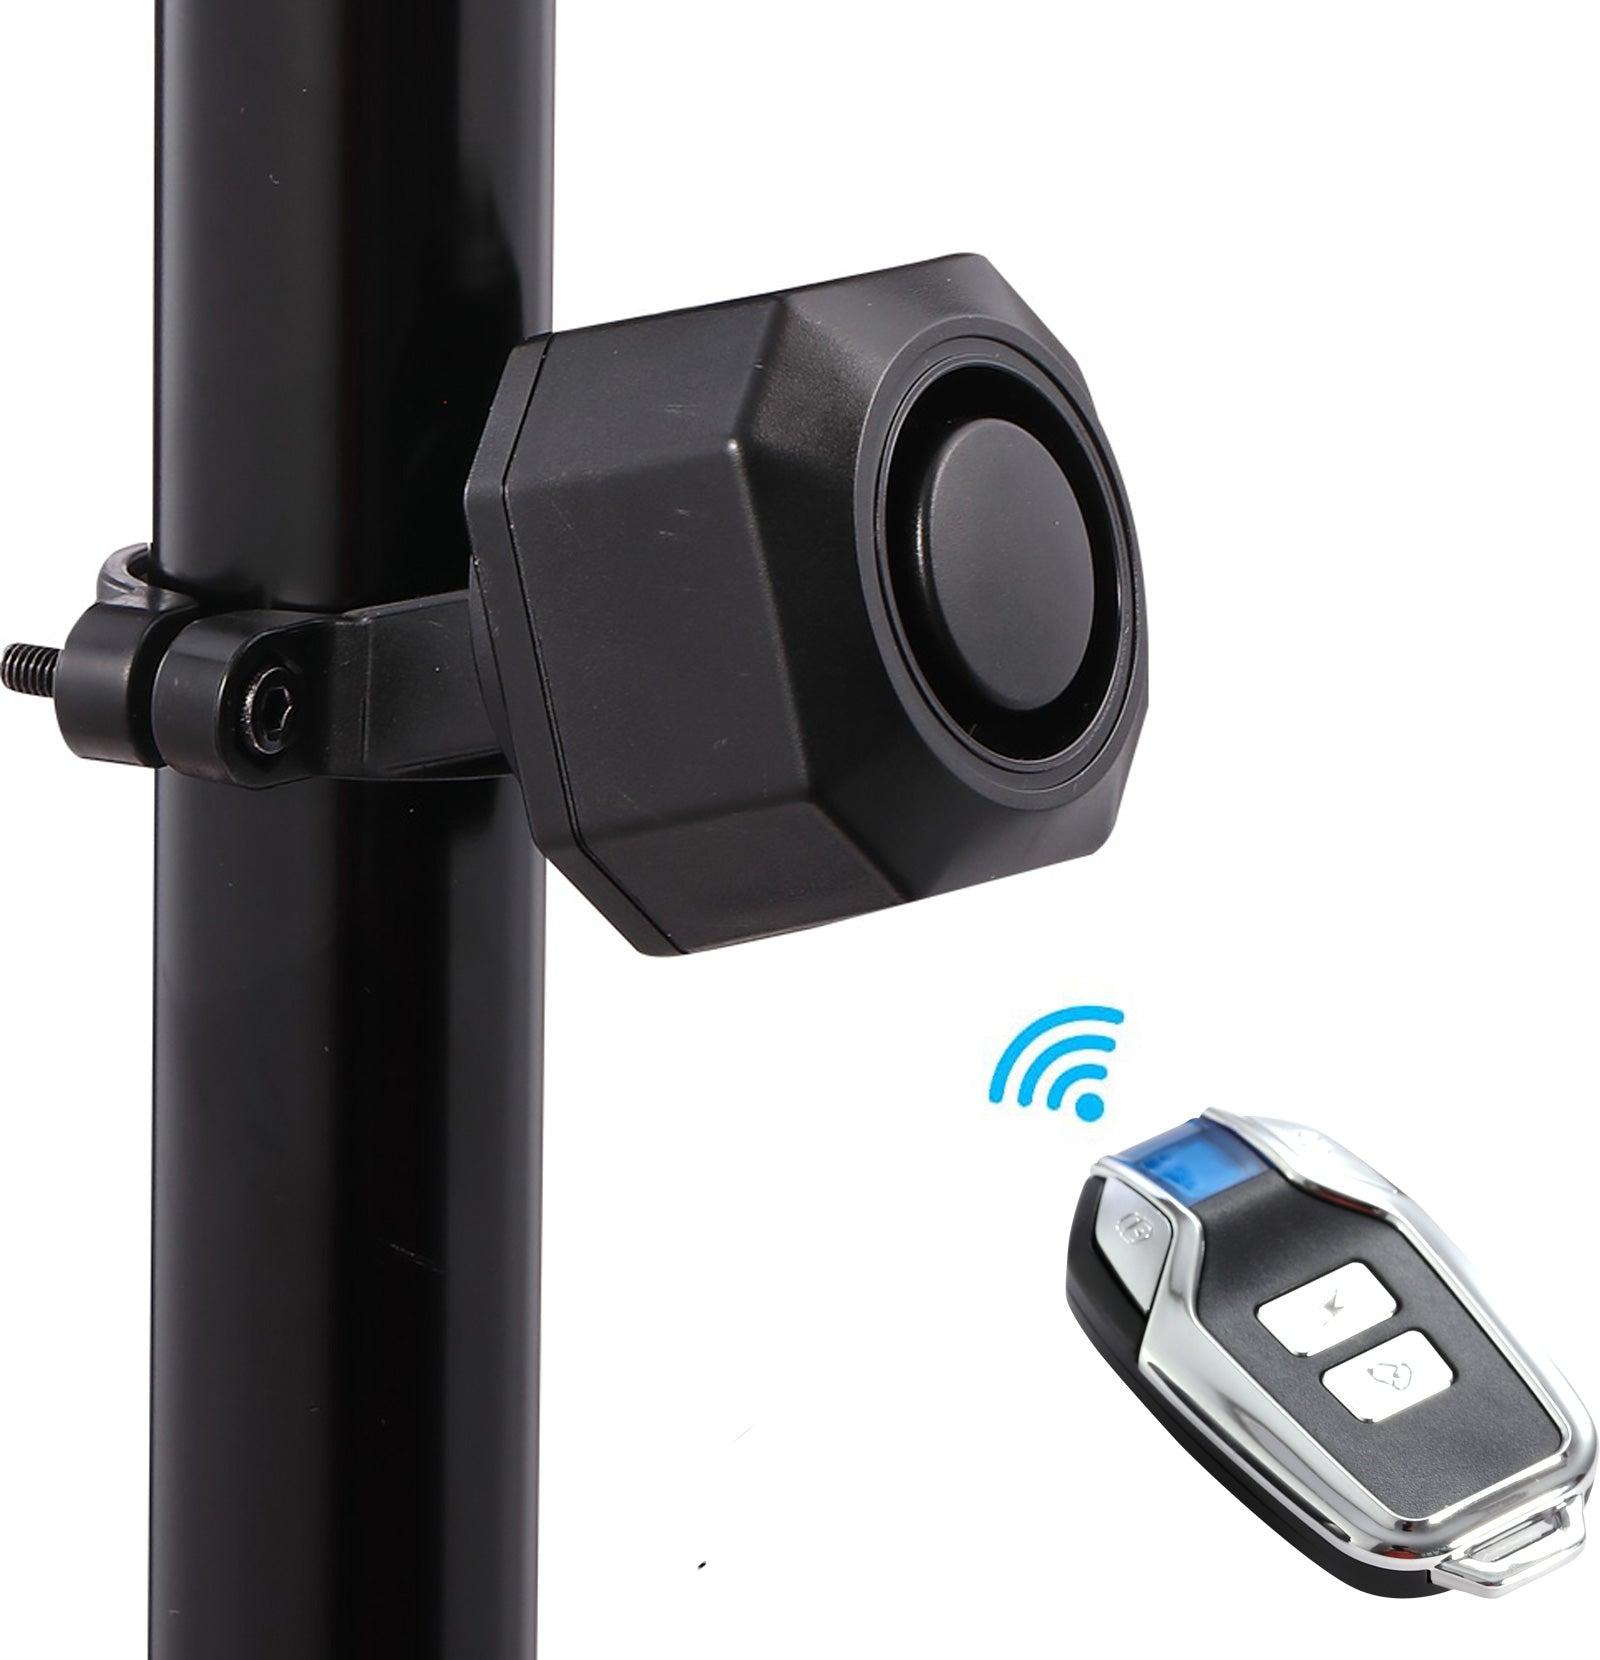 YASONG USB Rechargeable Bike Alarm Wireless Anti Theft Motorcycle Bicy –  YASONG Alarm